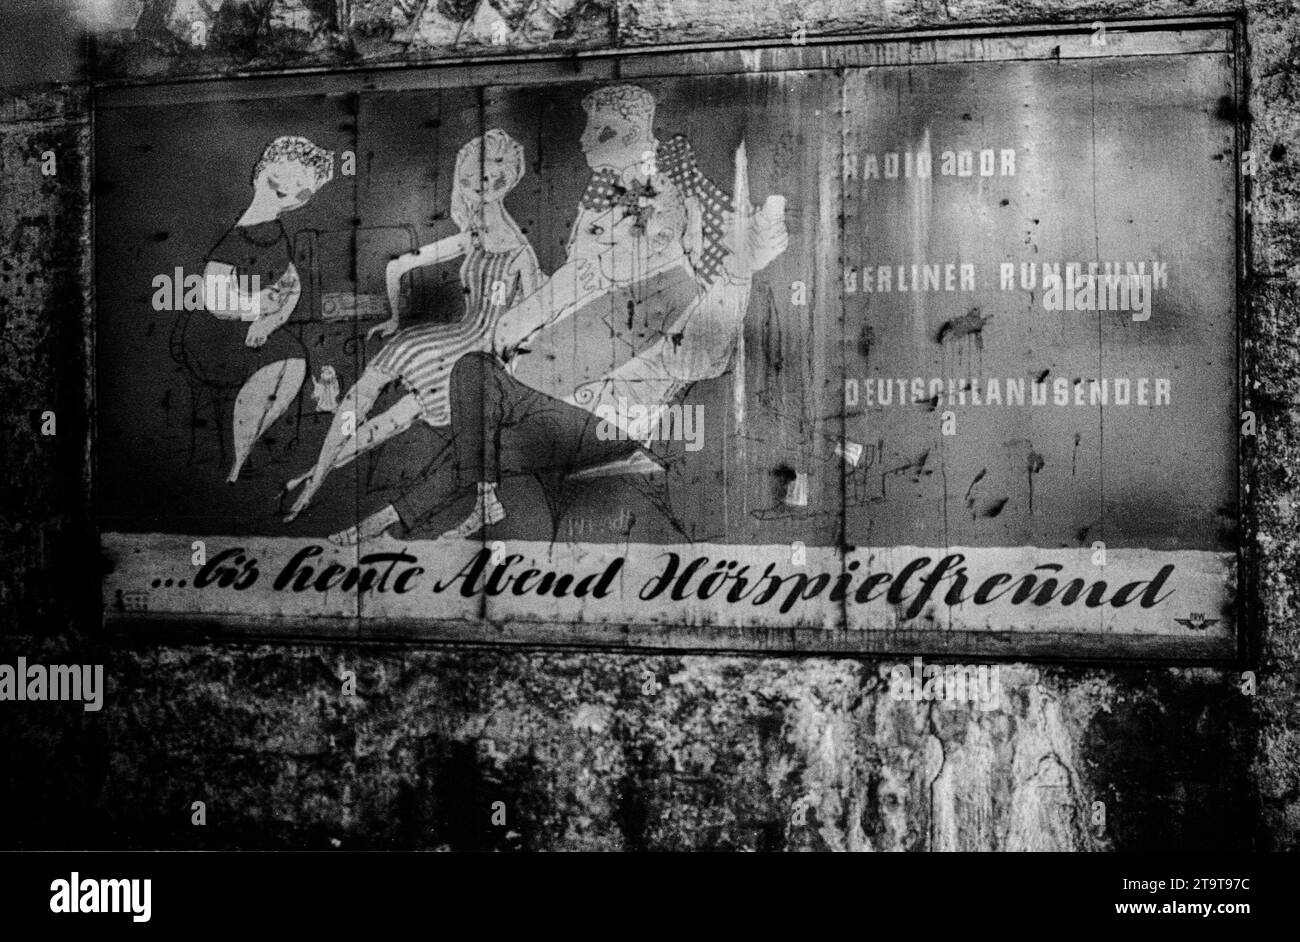 Geisterbahnhof Potsdamer Platz DDR, Berlin, 17.6.1990, S-Bahnhof Potsdamer Platz, 28 Jahre Geisterbahnhof, Reklame für die Rundfunksender der DDR., bis heute Abend Hörspielfreund, Â *** Ghost station Potsdamer Platz GDR, Berlin, 17 6 1990, S station Potsdamer Platz, 28 years ghost station, advertisement for the radio stations of the GDR, until tonight radio play friend, Â Credit: Imago/Alamy Live News Stock Photo